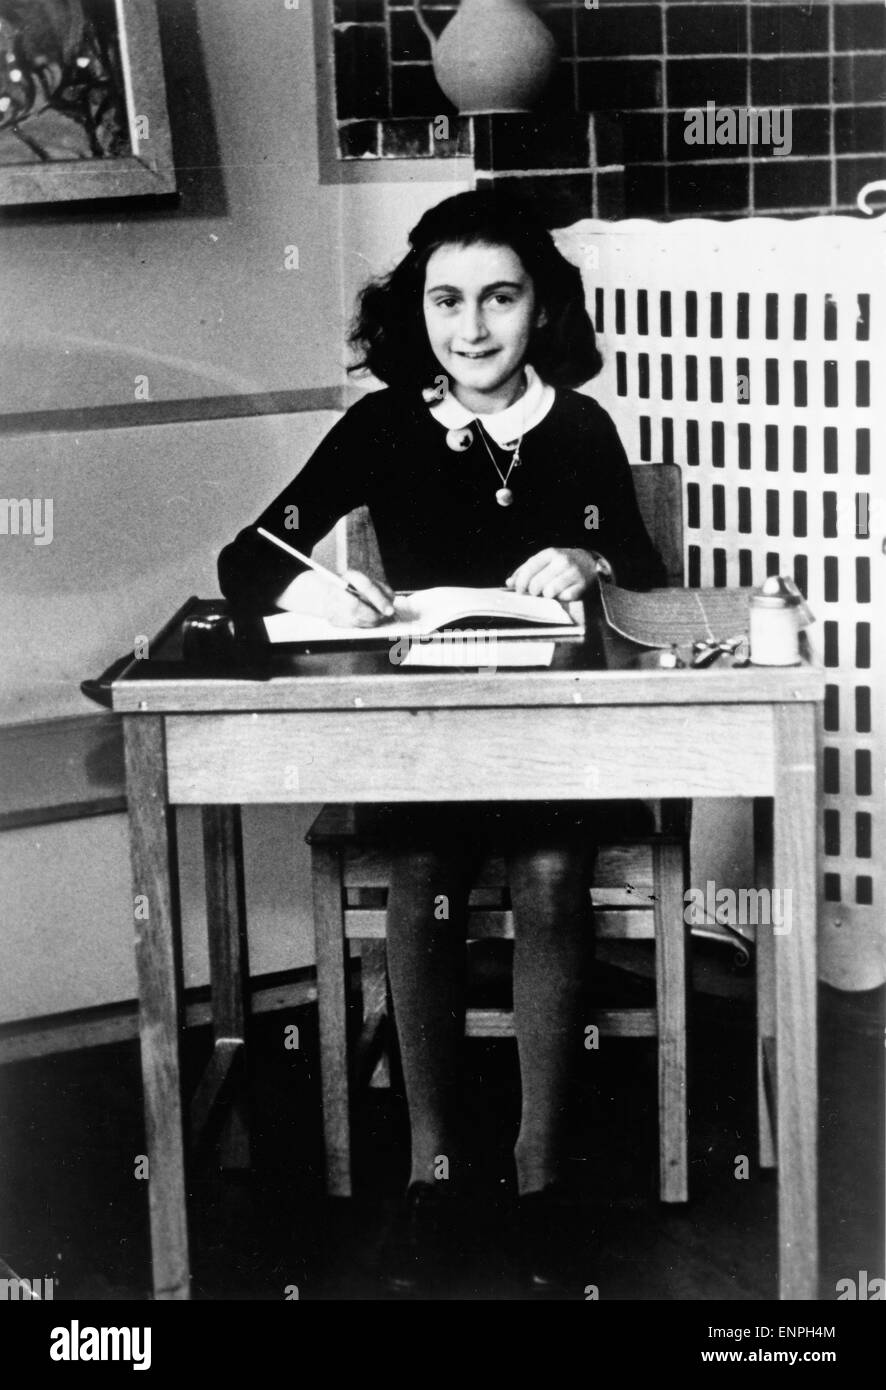 Anne Frank Remembered, Großbritannien/USA/Niederlande 1995, Regie: Jon Blair, Dokumentation: Anne Frank beim Schreiben. Stock Photo